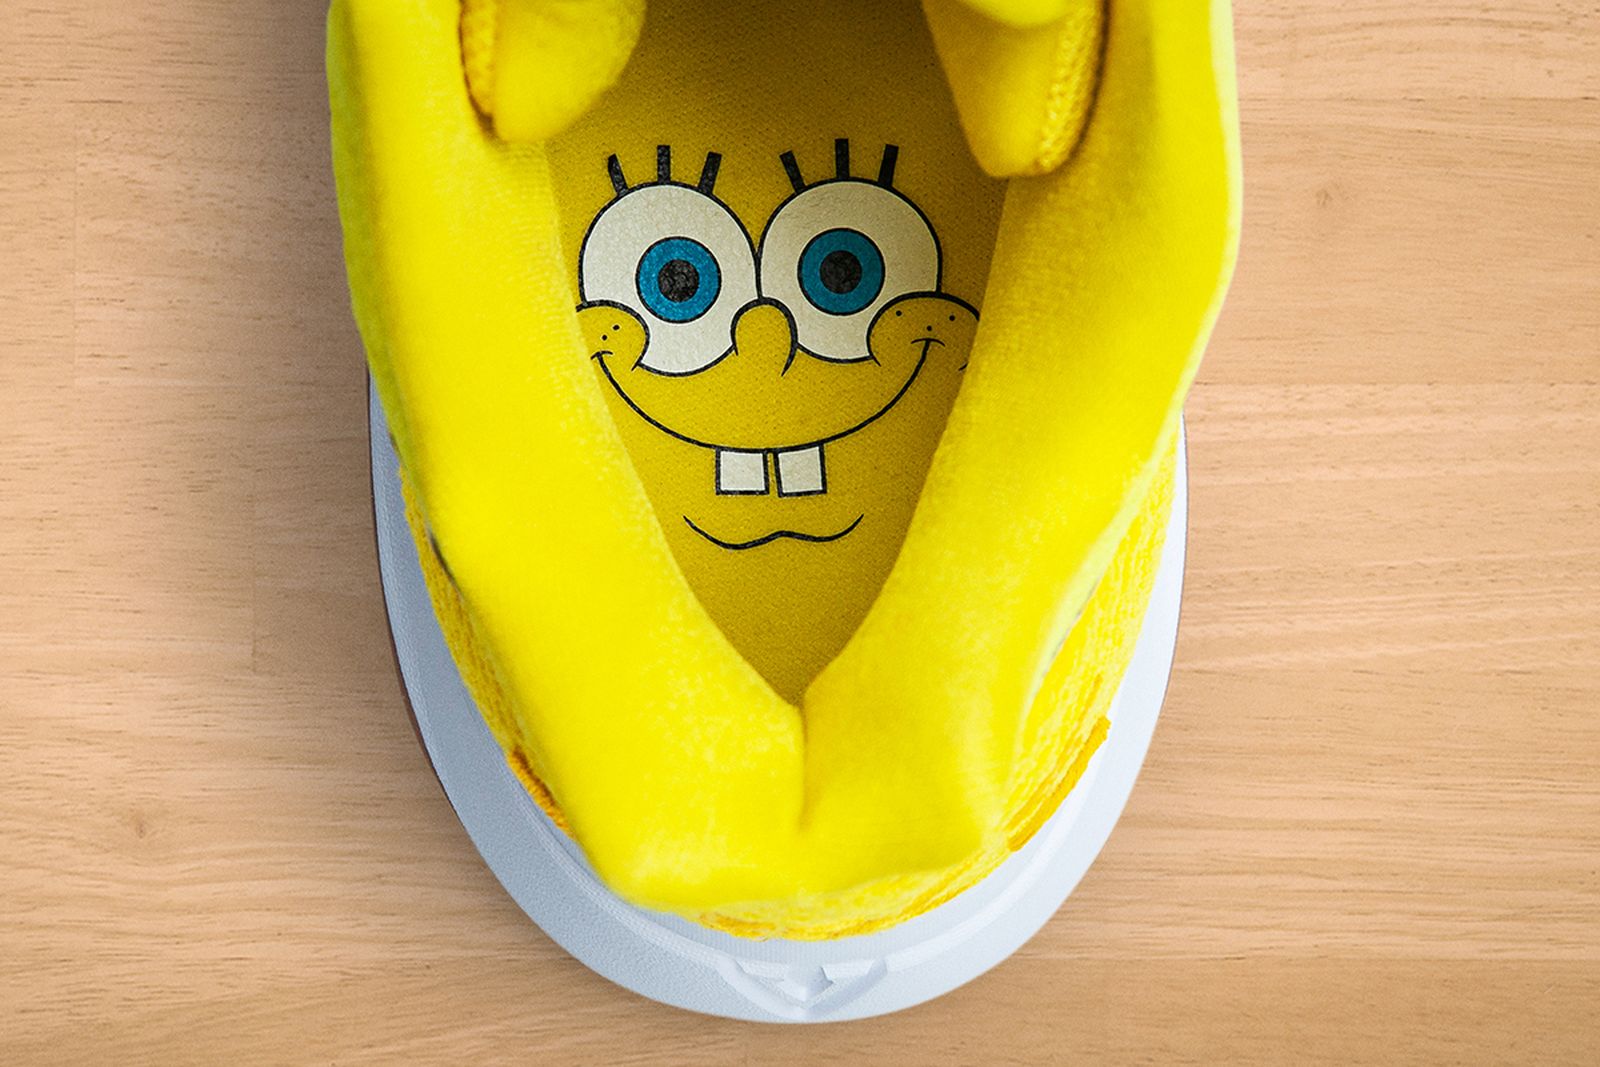 nike kyrie 5 spongebob release date price Kyrie Irving nickelodeon spongebob squarepants